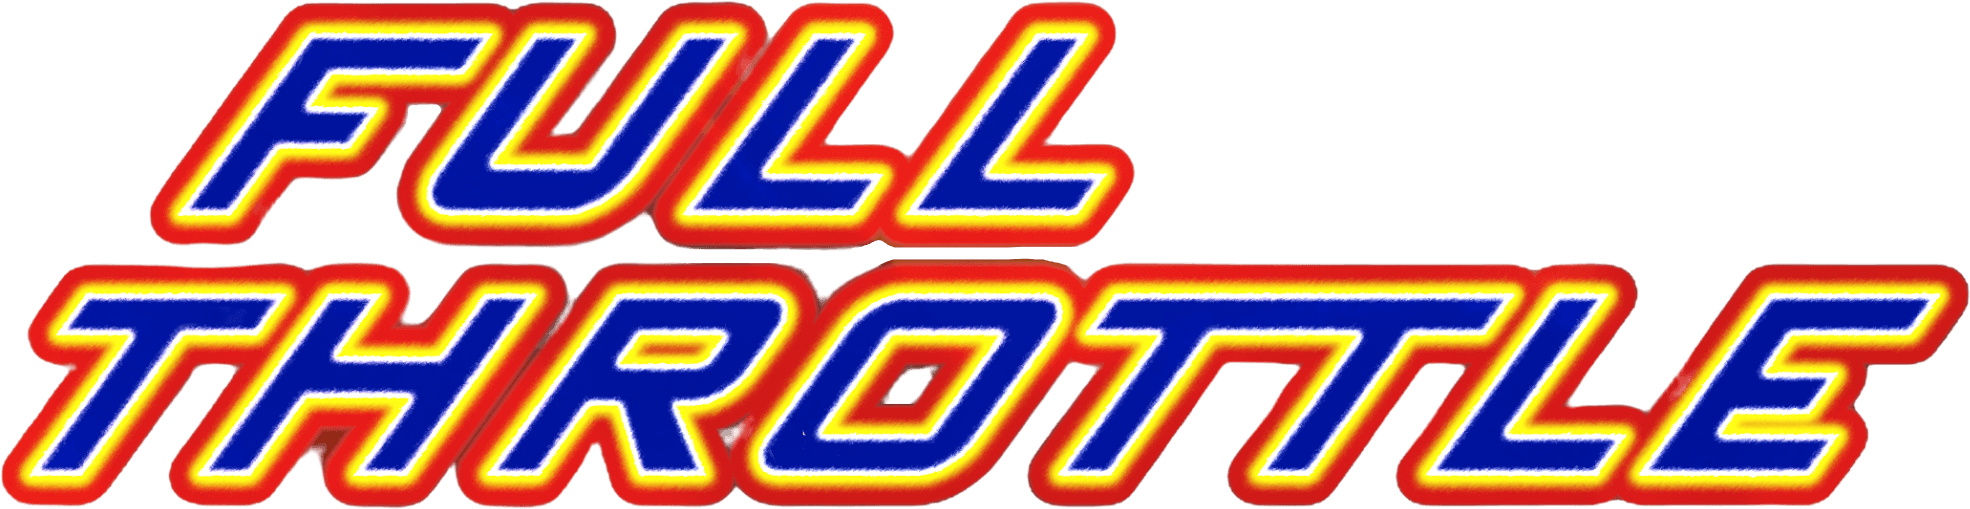 Full Throttle logo